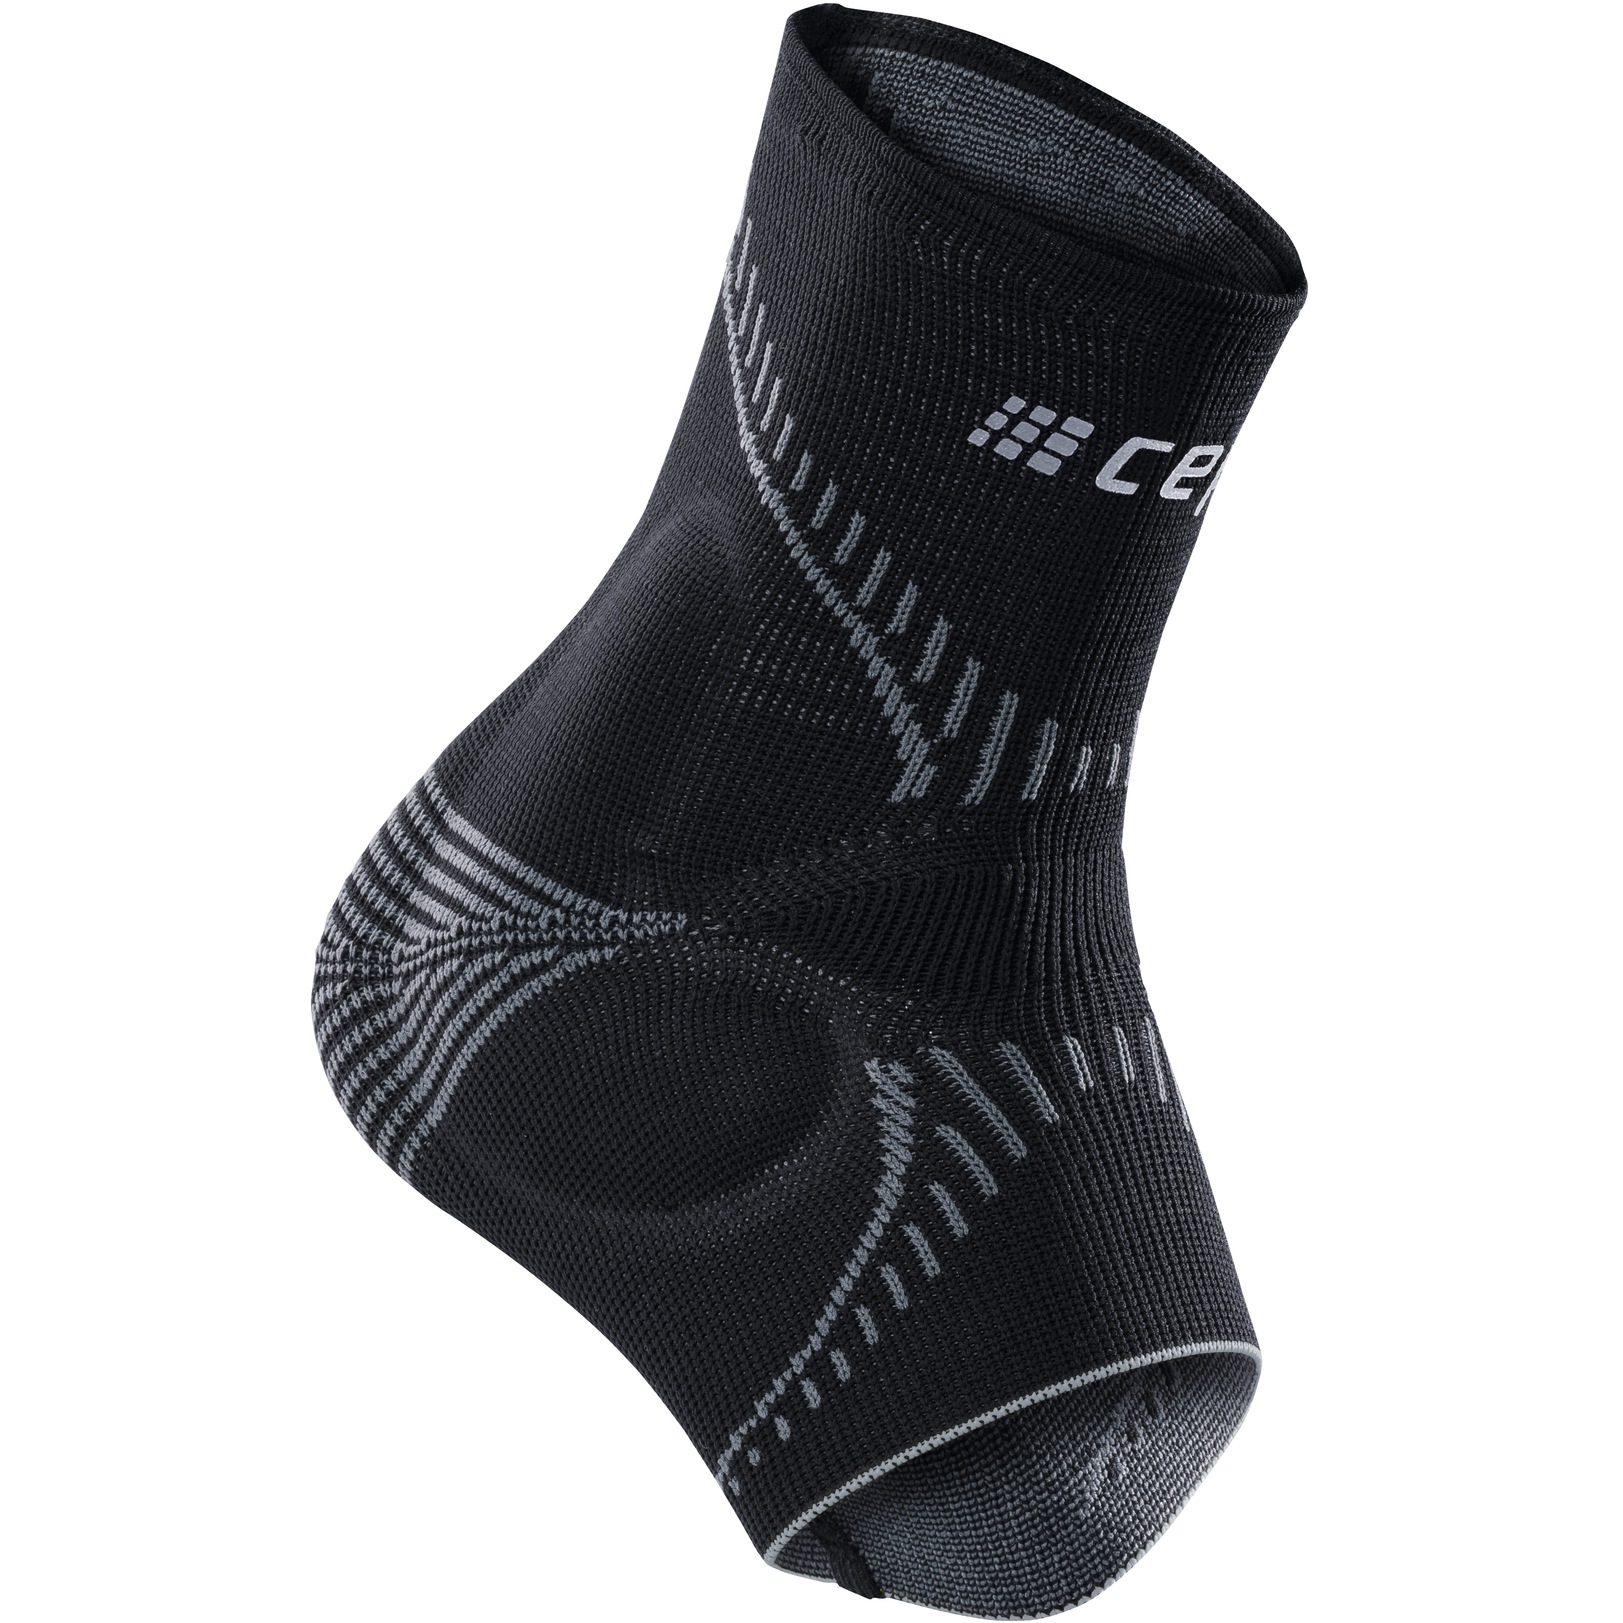 Produktbild von CEP Ortho+ Fußgelenkbandage Unisex - schwarz/grau